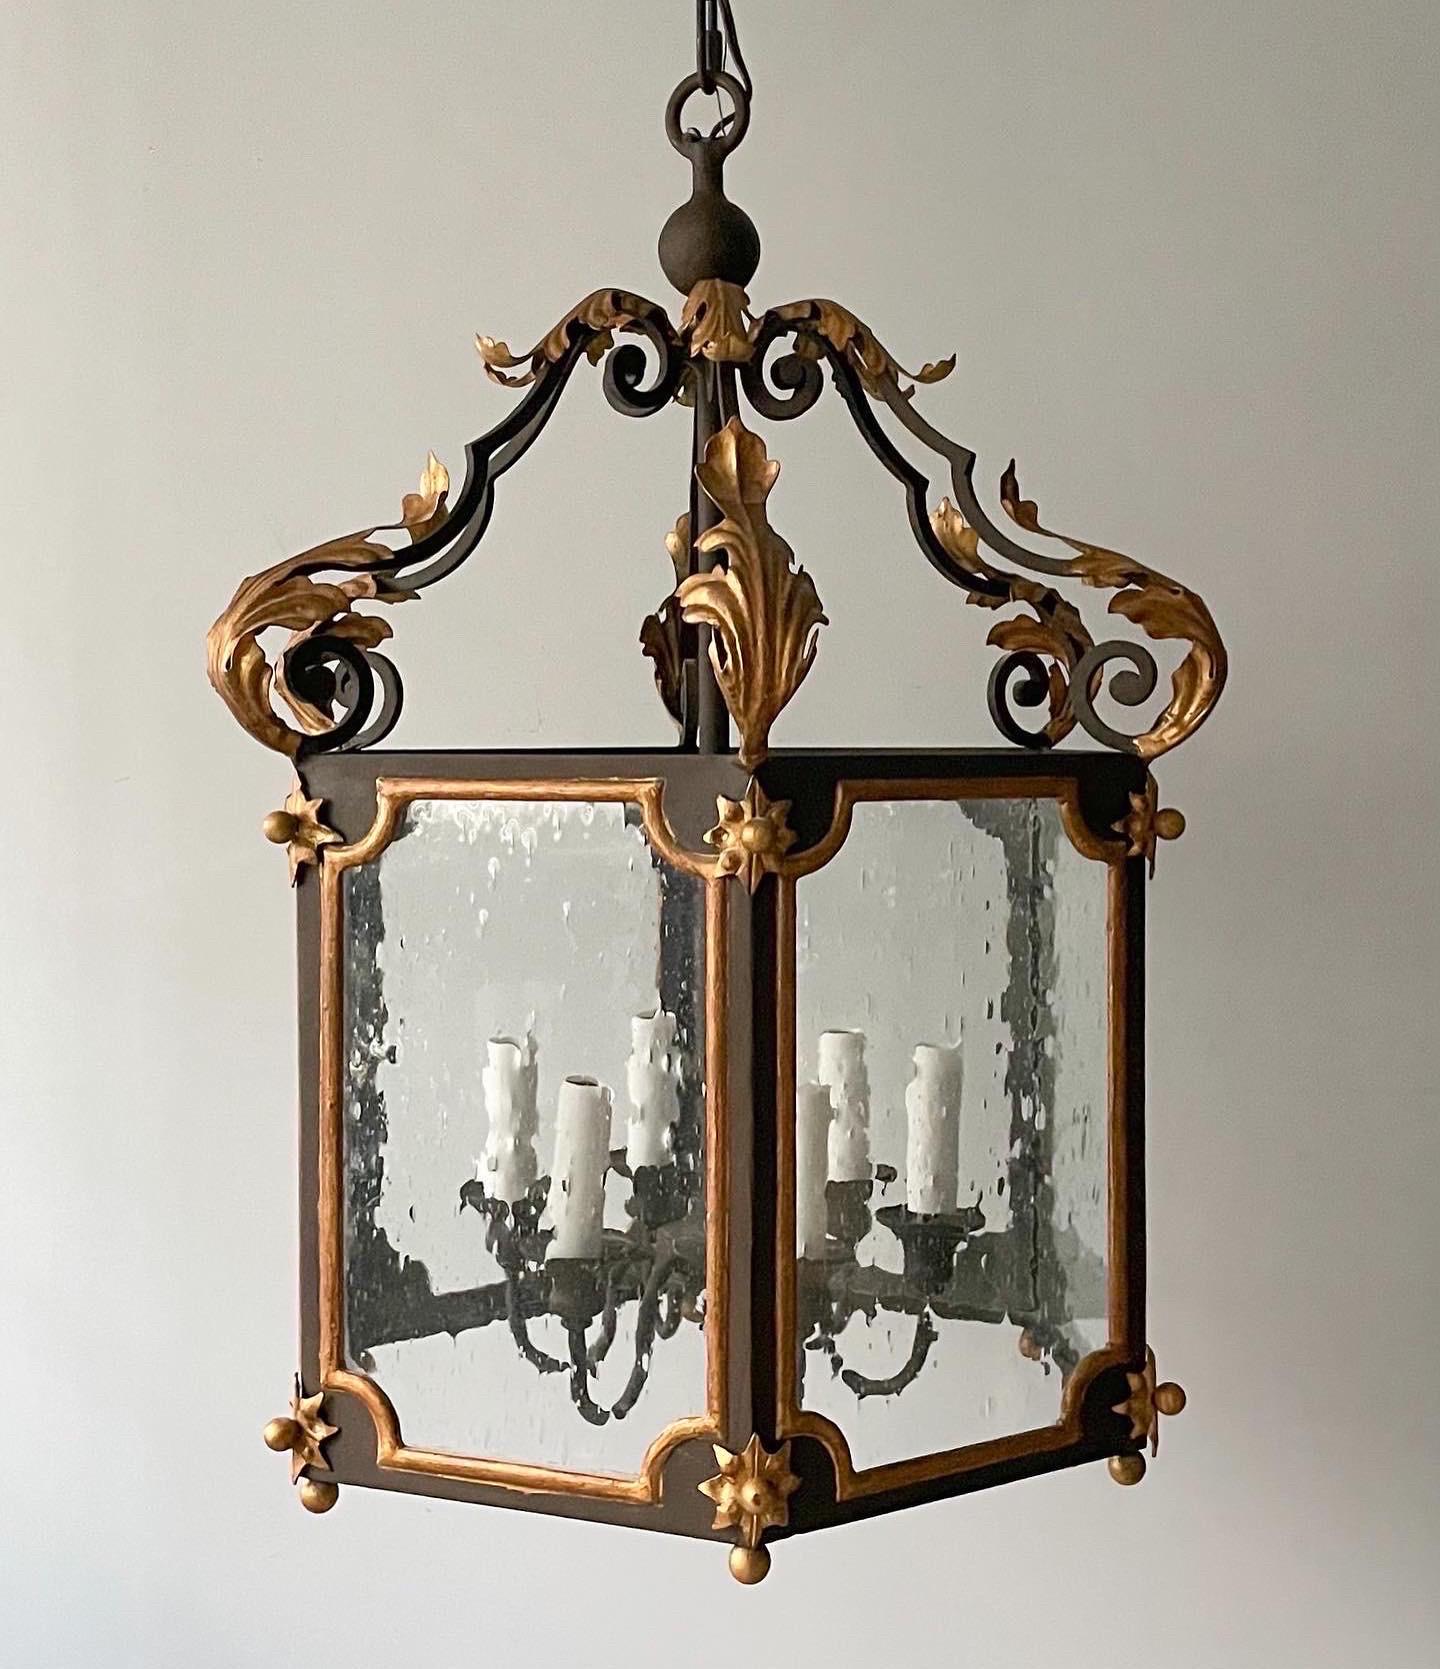 Magnifique lanterne vintage peinte et dorée à la feuille dans le style provincial français. 

La lanterne présente un cadre en fer dans une finition brun rouille foncé avec des décorations dorées comprenant des feuilles d'acanthe et des étoiles.